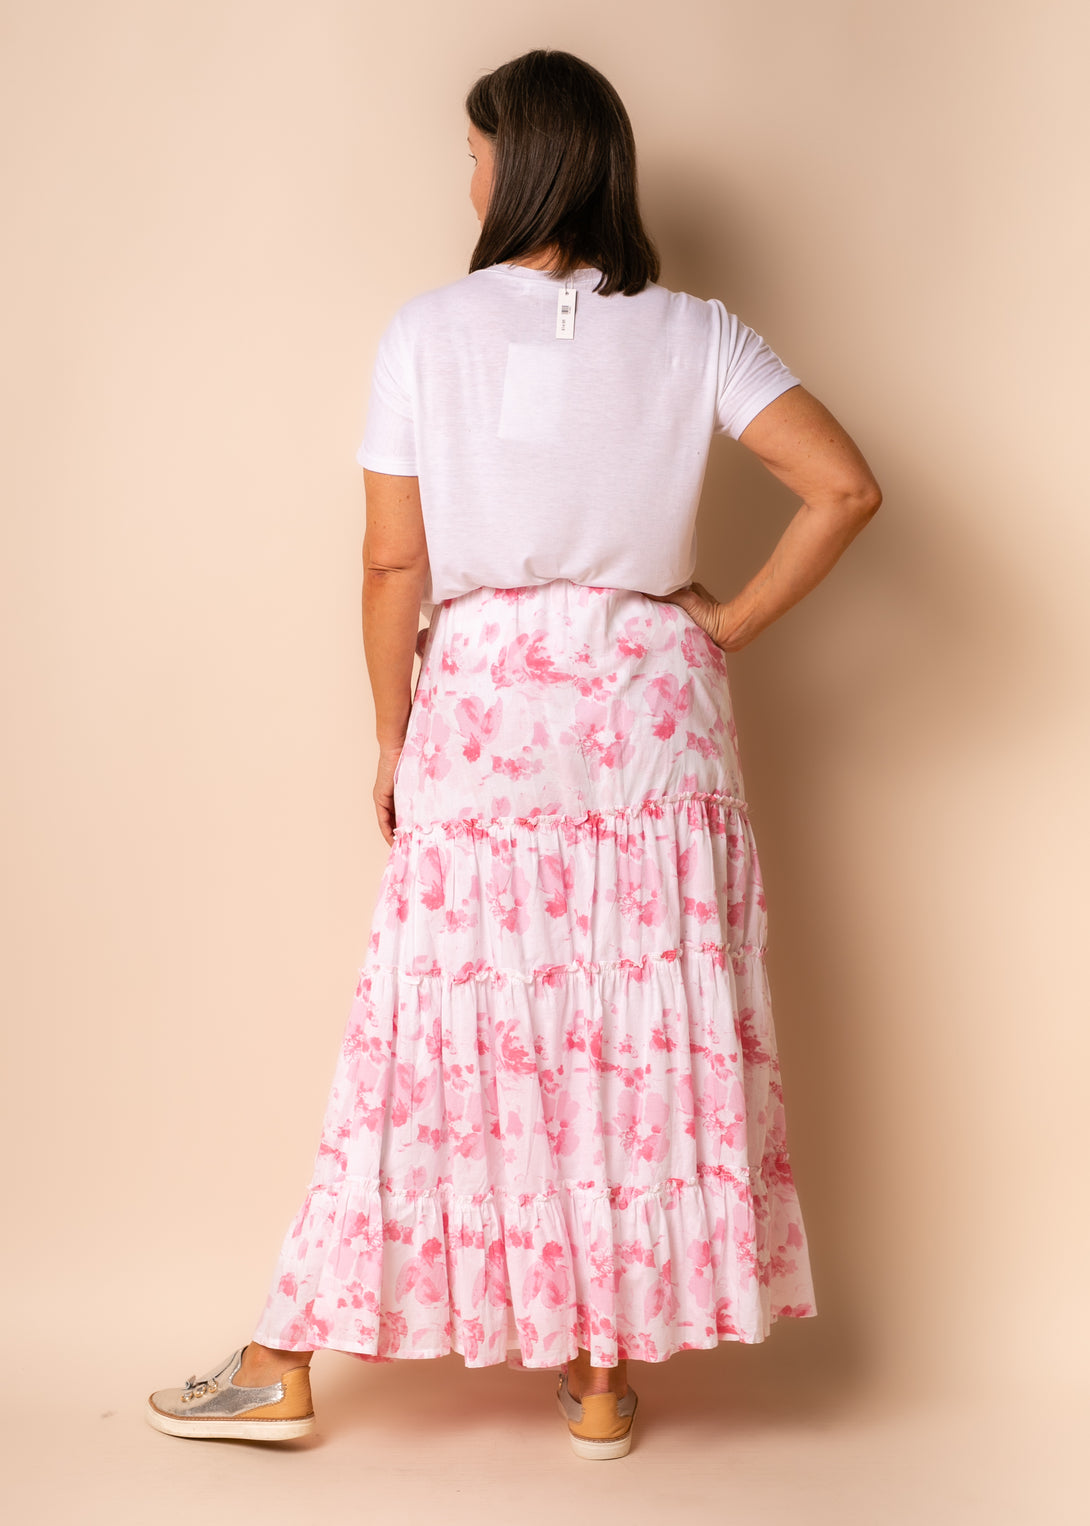 Berlin Cotton Skirt in Blush - Imagine Fashion